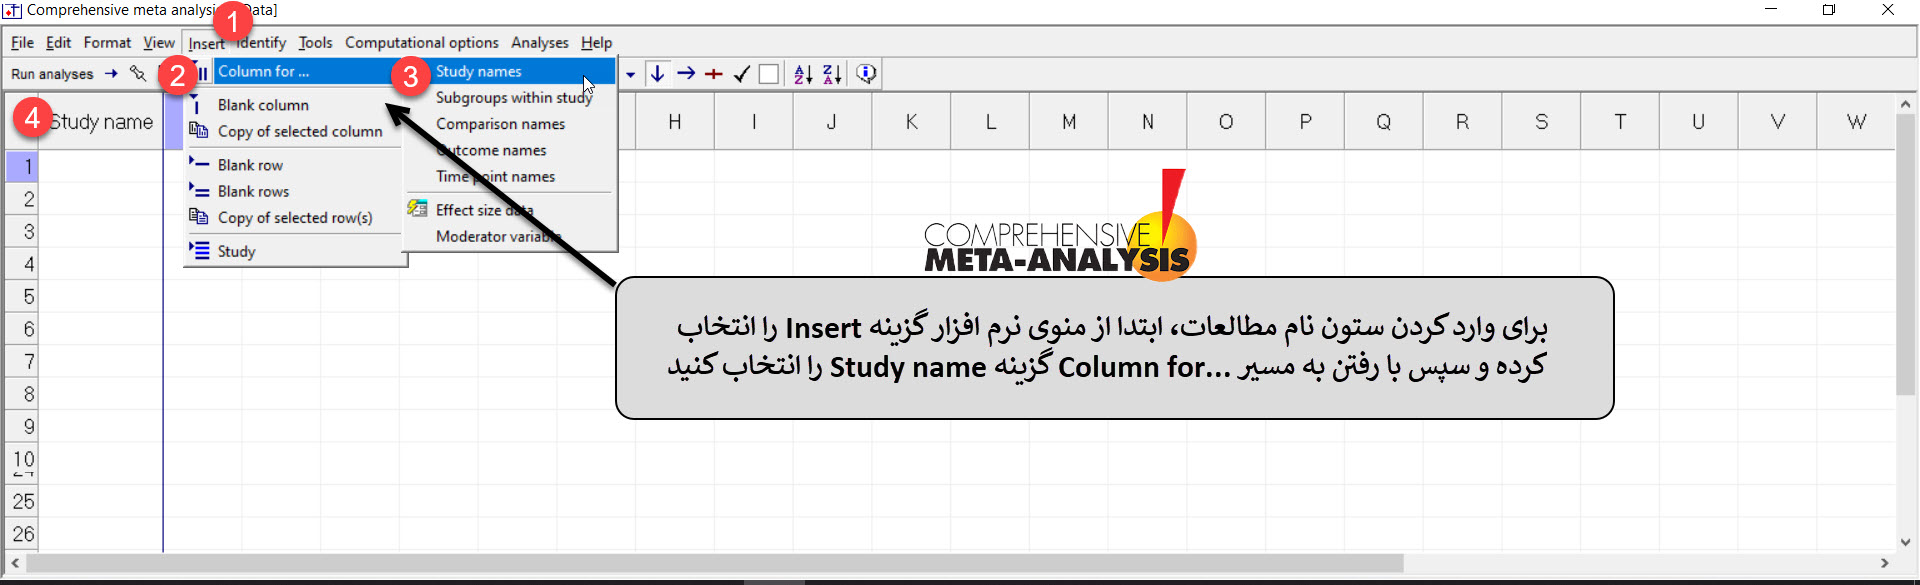 کارگاه فراتحلیل cma ,آموزش فراتحلیل با cma ,دانلود کرک رایگان نرم افزار Comprehensive Meta-Analysis (CMA)